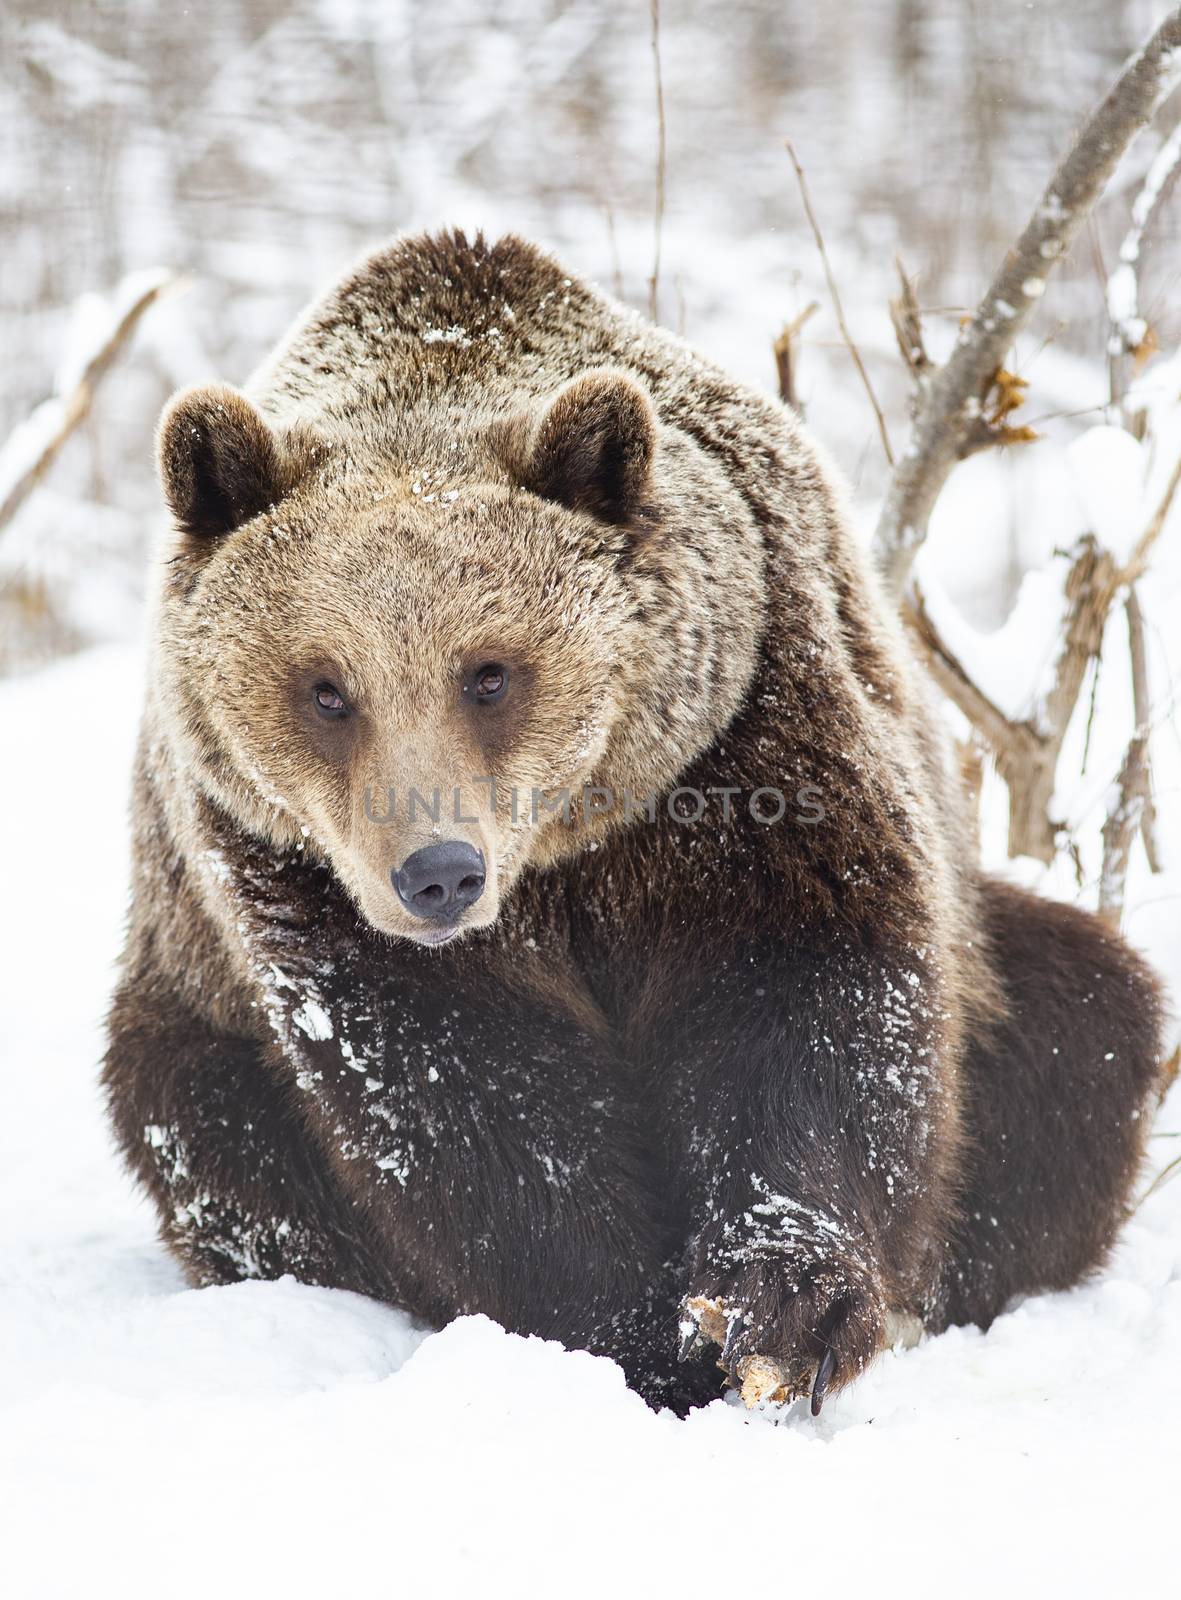 brown bear in snow by melis